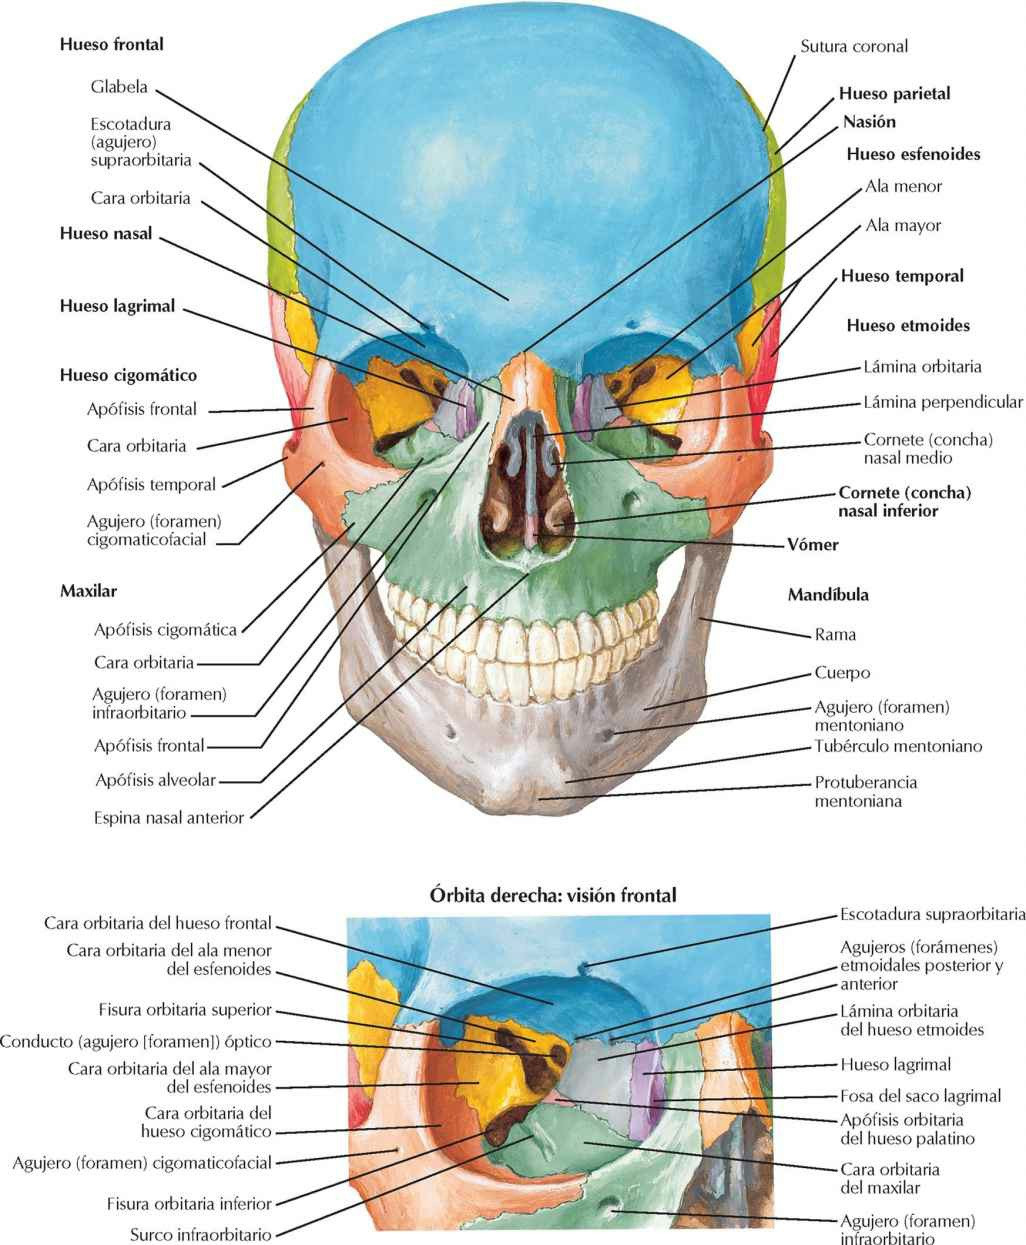 Cráneo: visión anterior.